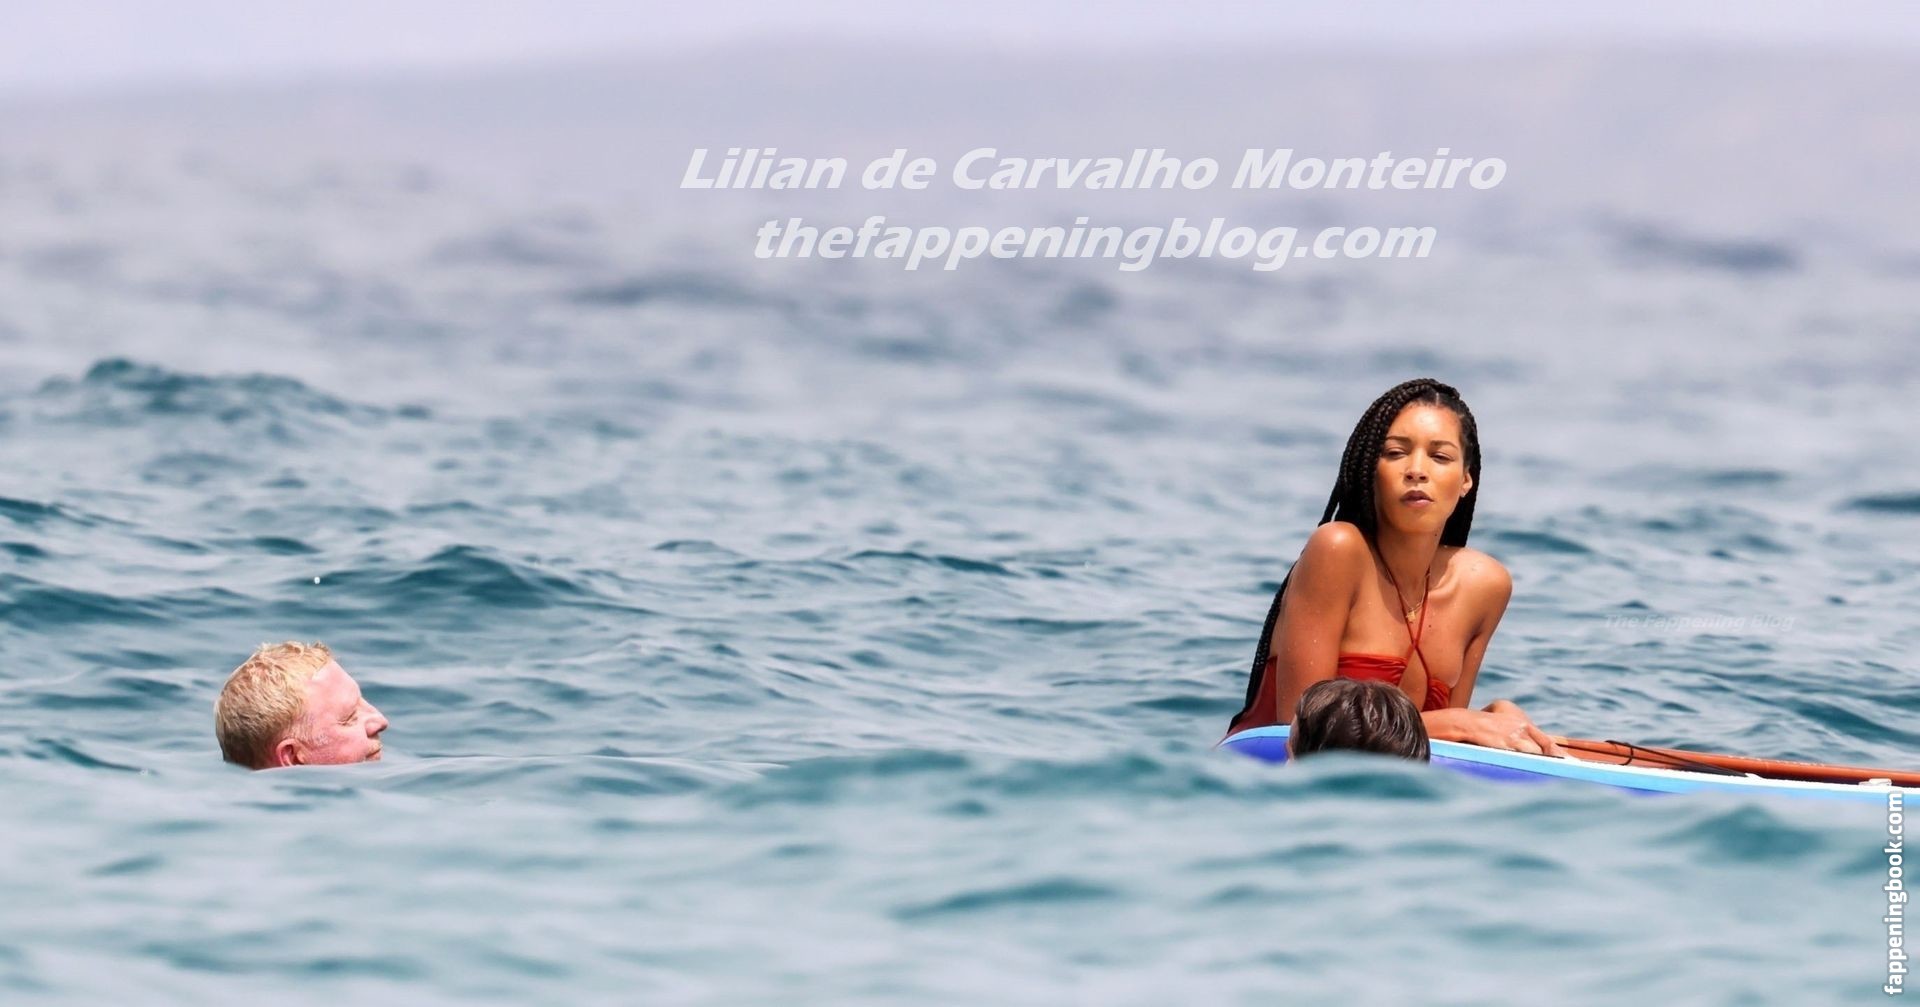 Lilian de Carvalho Nude